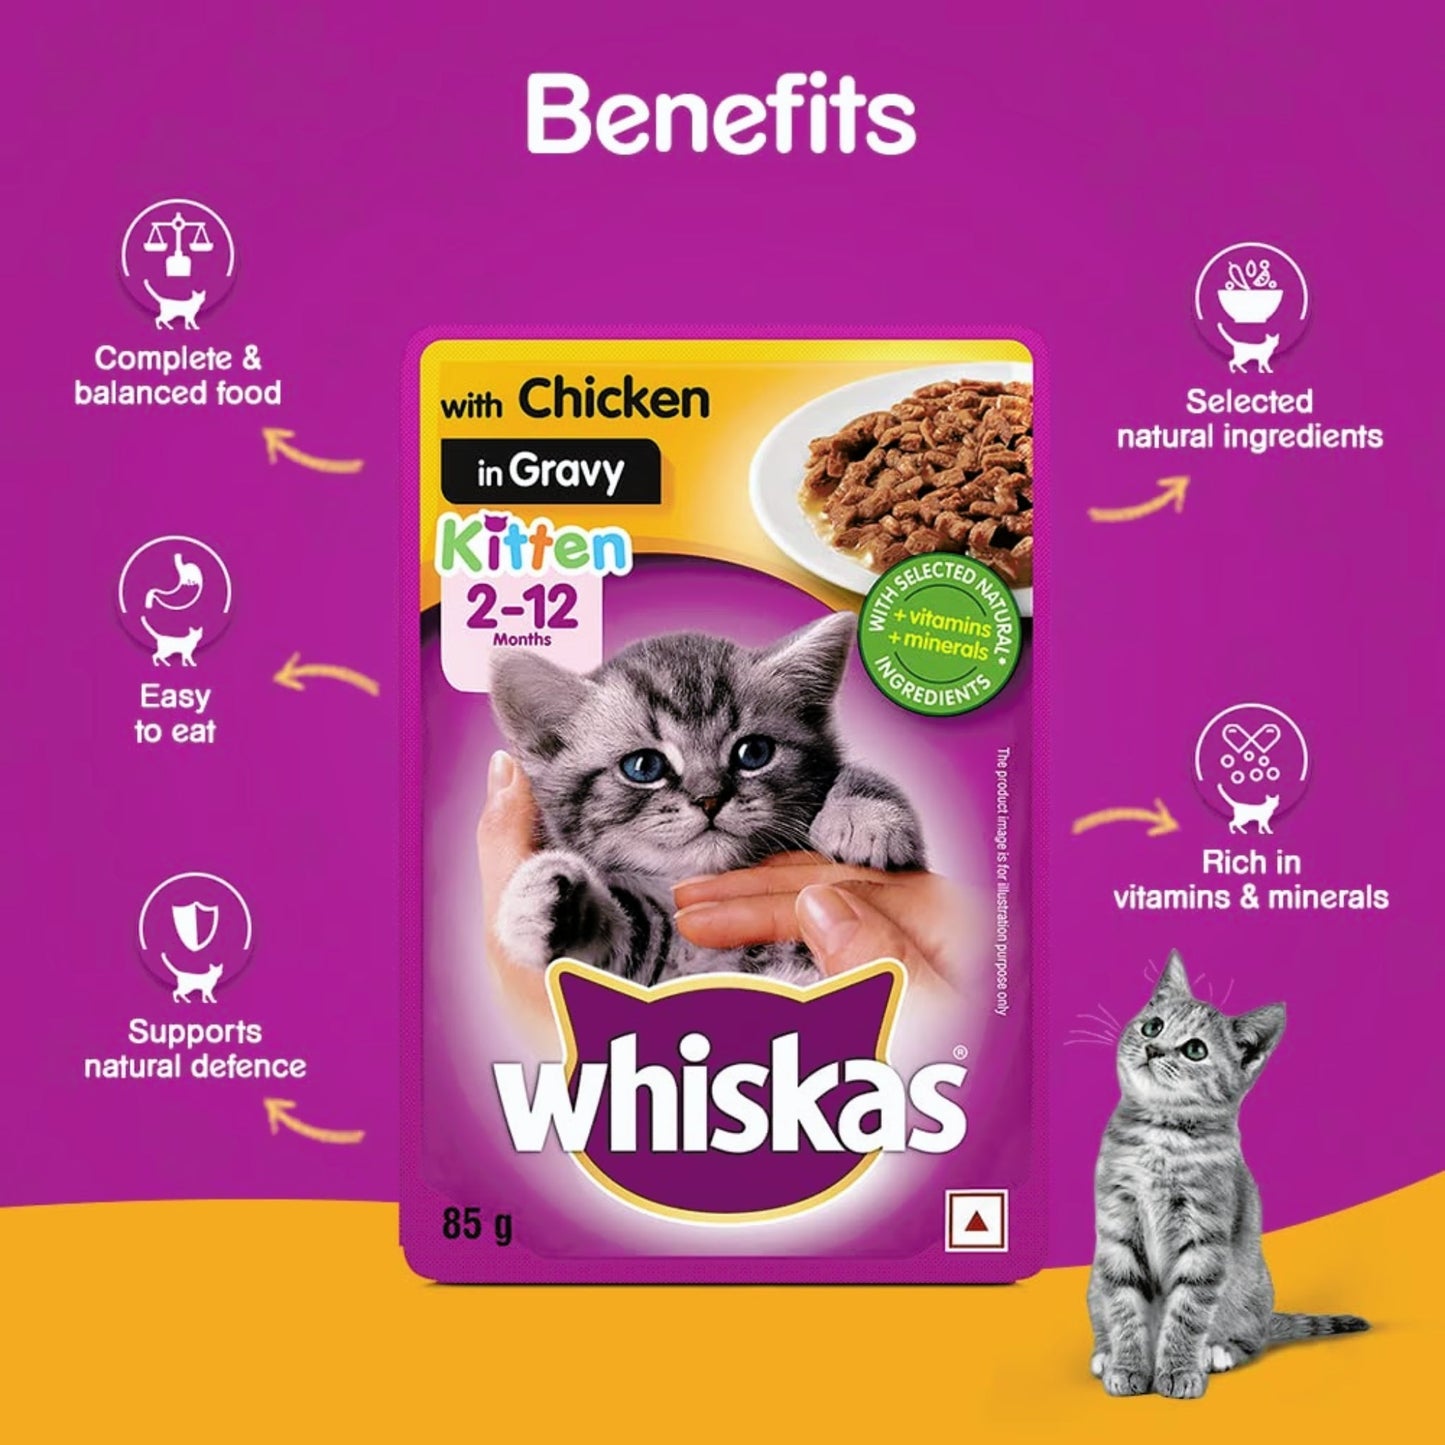 Whiskas Chicken in Gravy Wet Food for Kittens - 85gm, Pack of 18